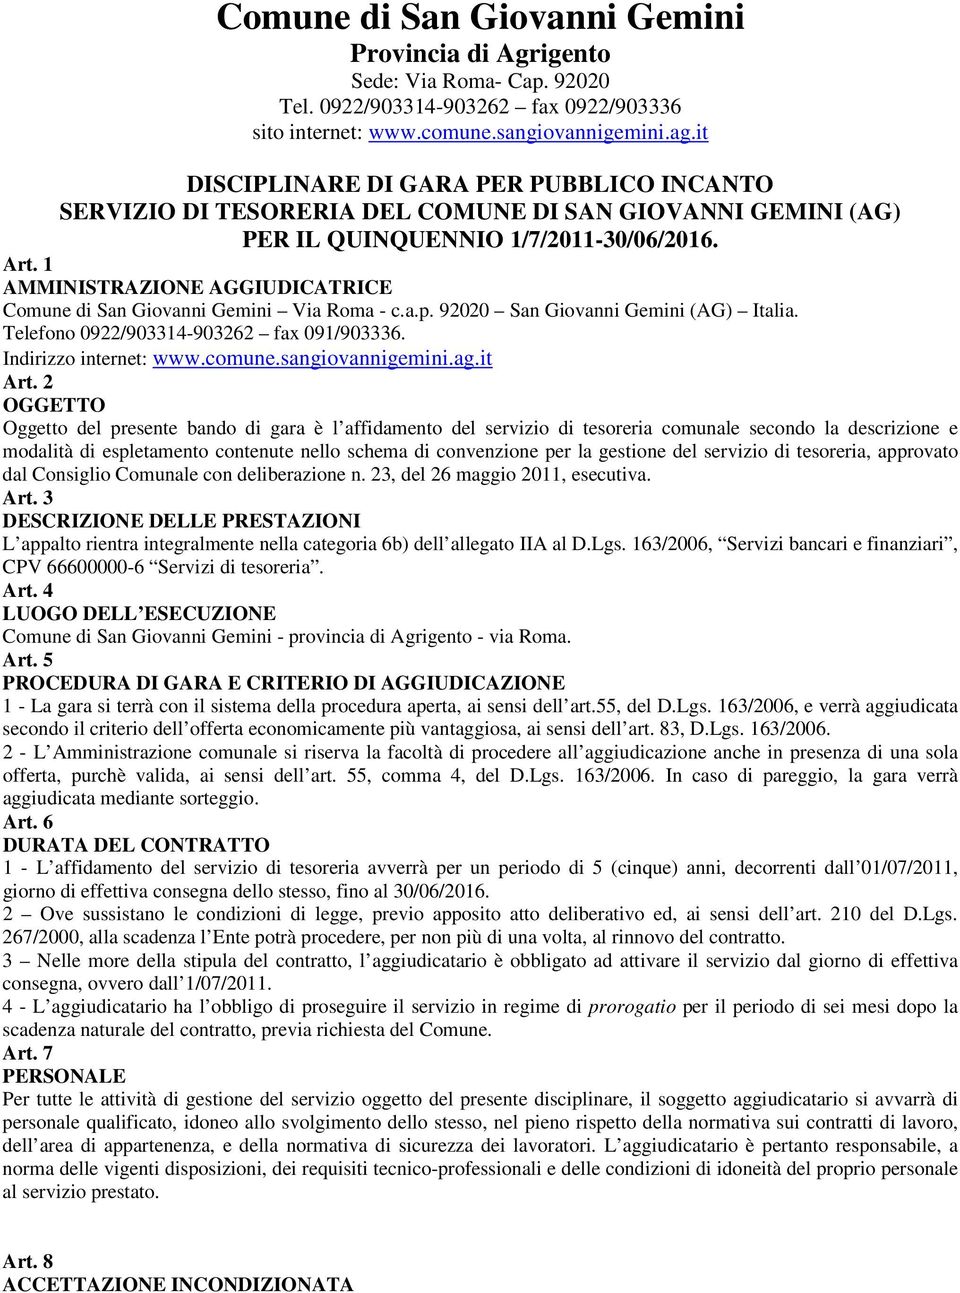 1 AMMINISTRAZIONE AGGIUDICATRICE Comune di San Giovanni Gemini Via Roma - c.a.p. 92020 San Giovanni Gemini (AG) Italia. Telefono 0922/903314-903262 fax 091/903336. Indirizzo internet: www.comune.